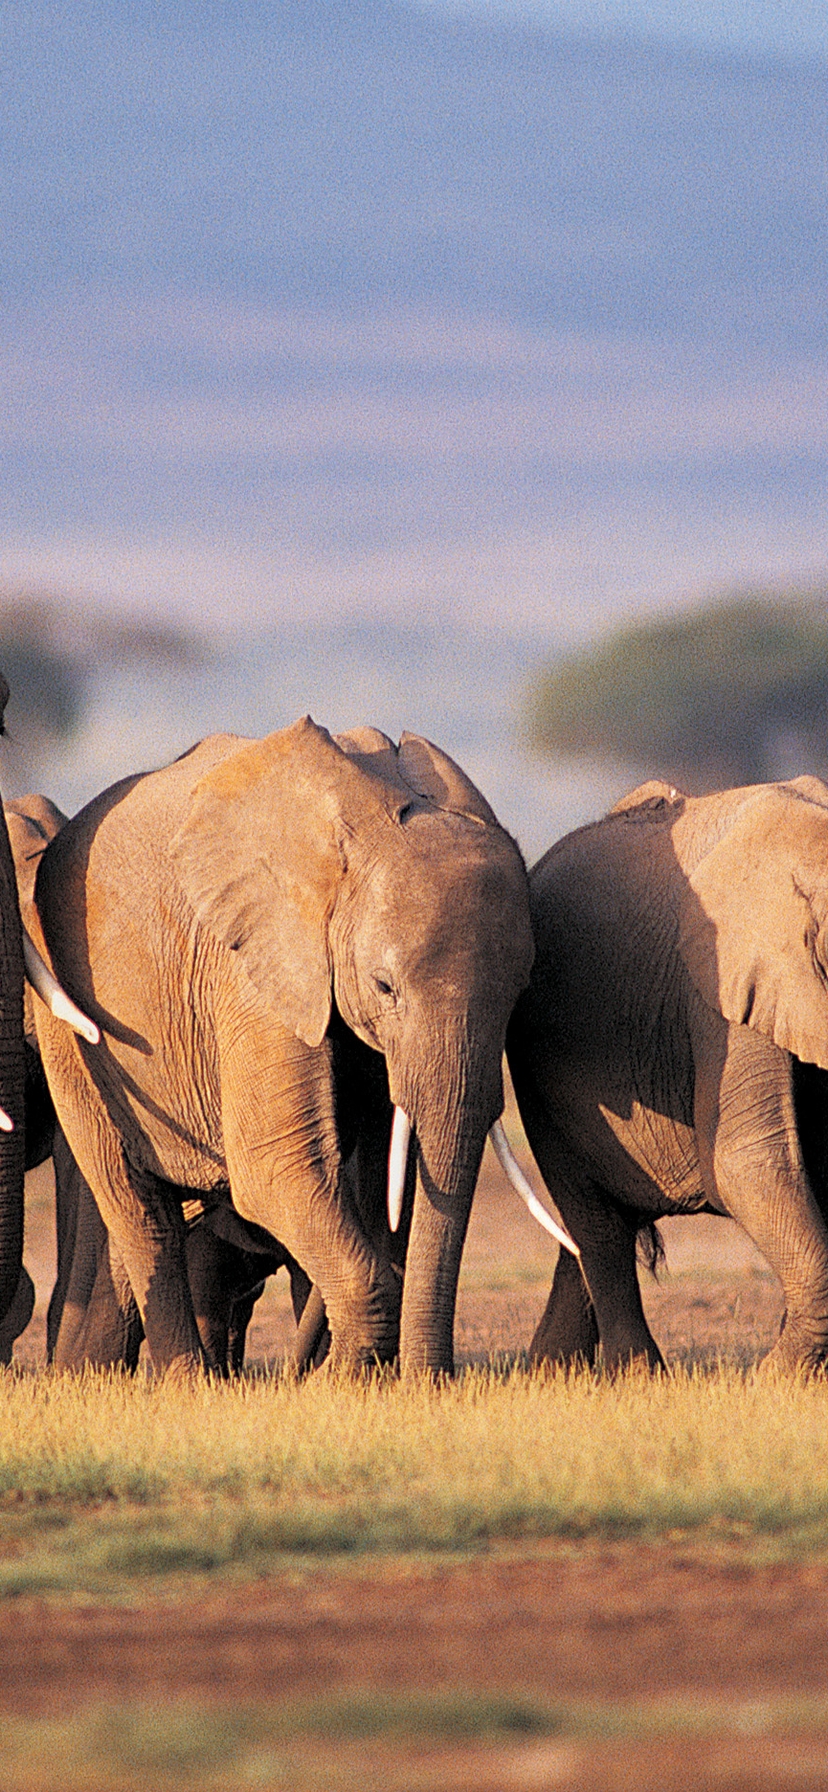 Картинка: Слоны, семья, саванна, поле, Африка